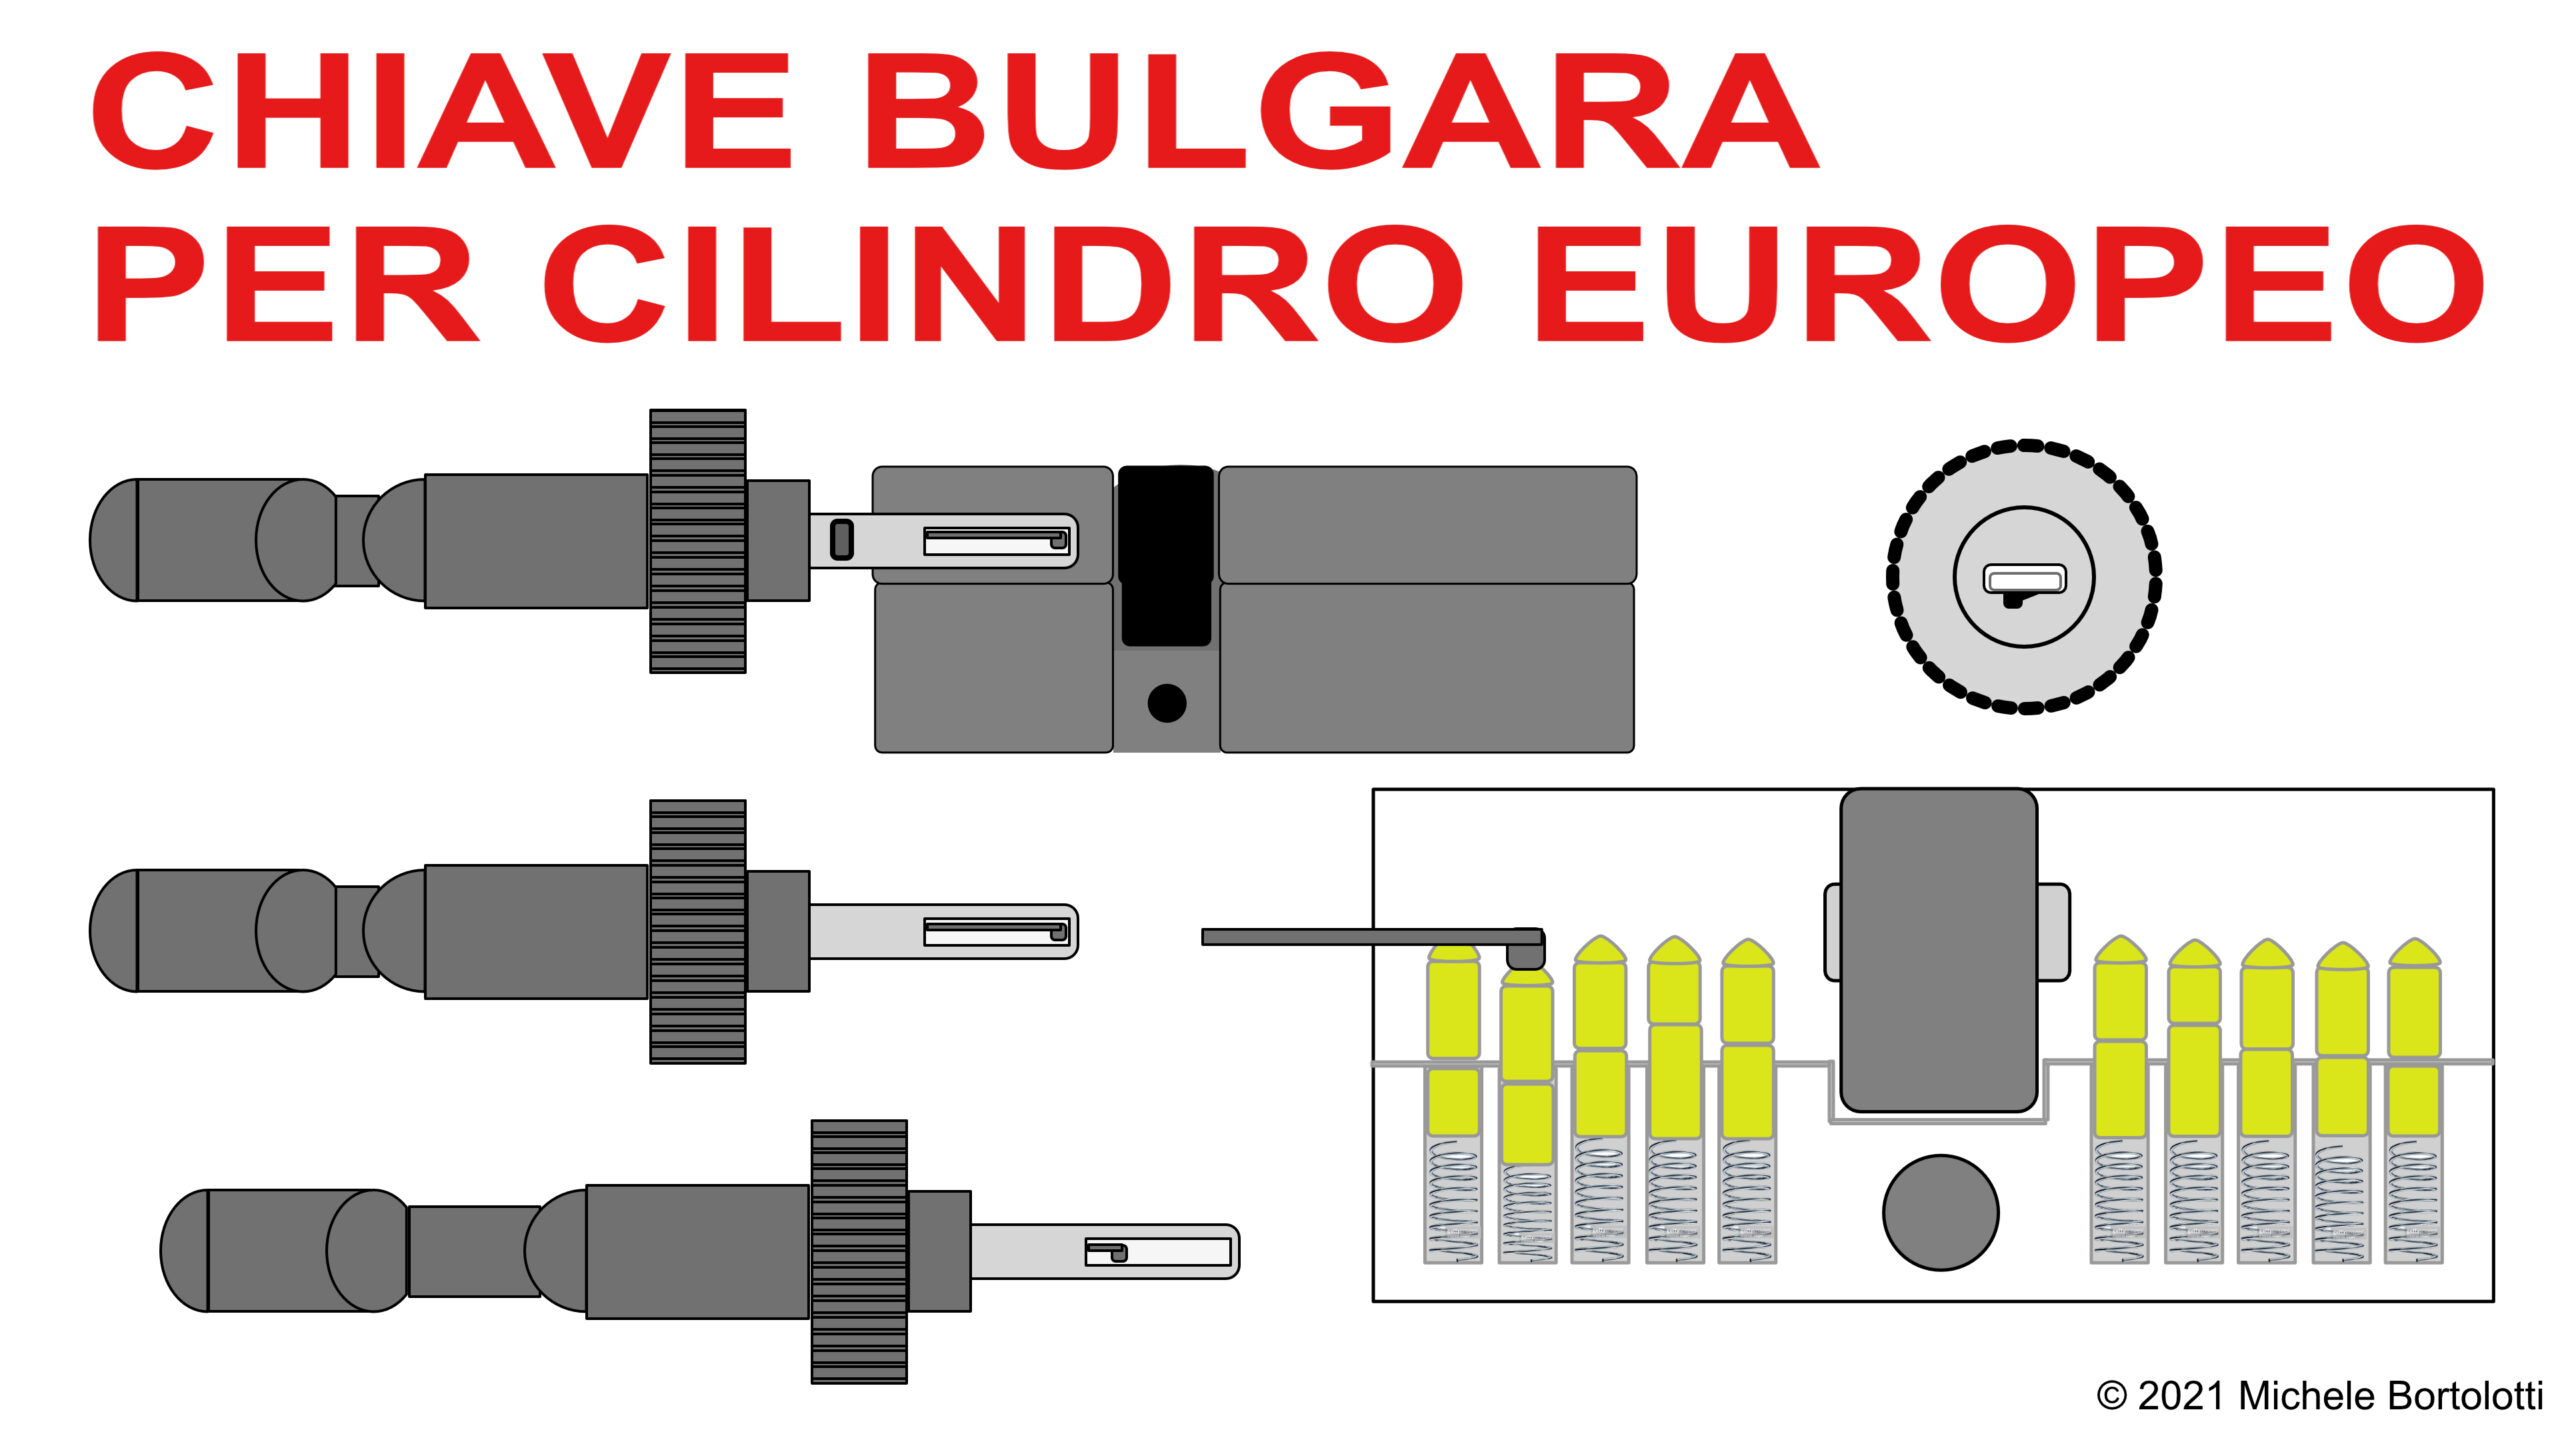 Furto con chiave bulgara: il passapartout per aprire le serrature